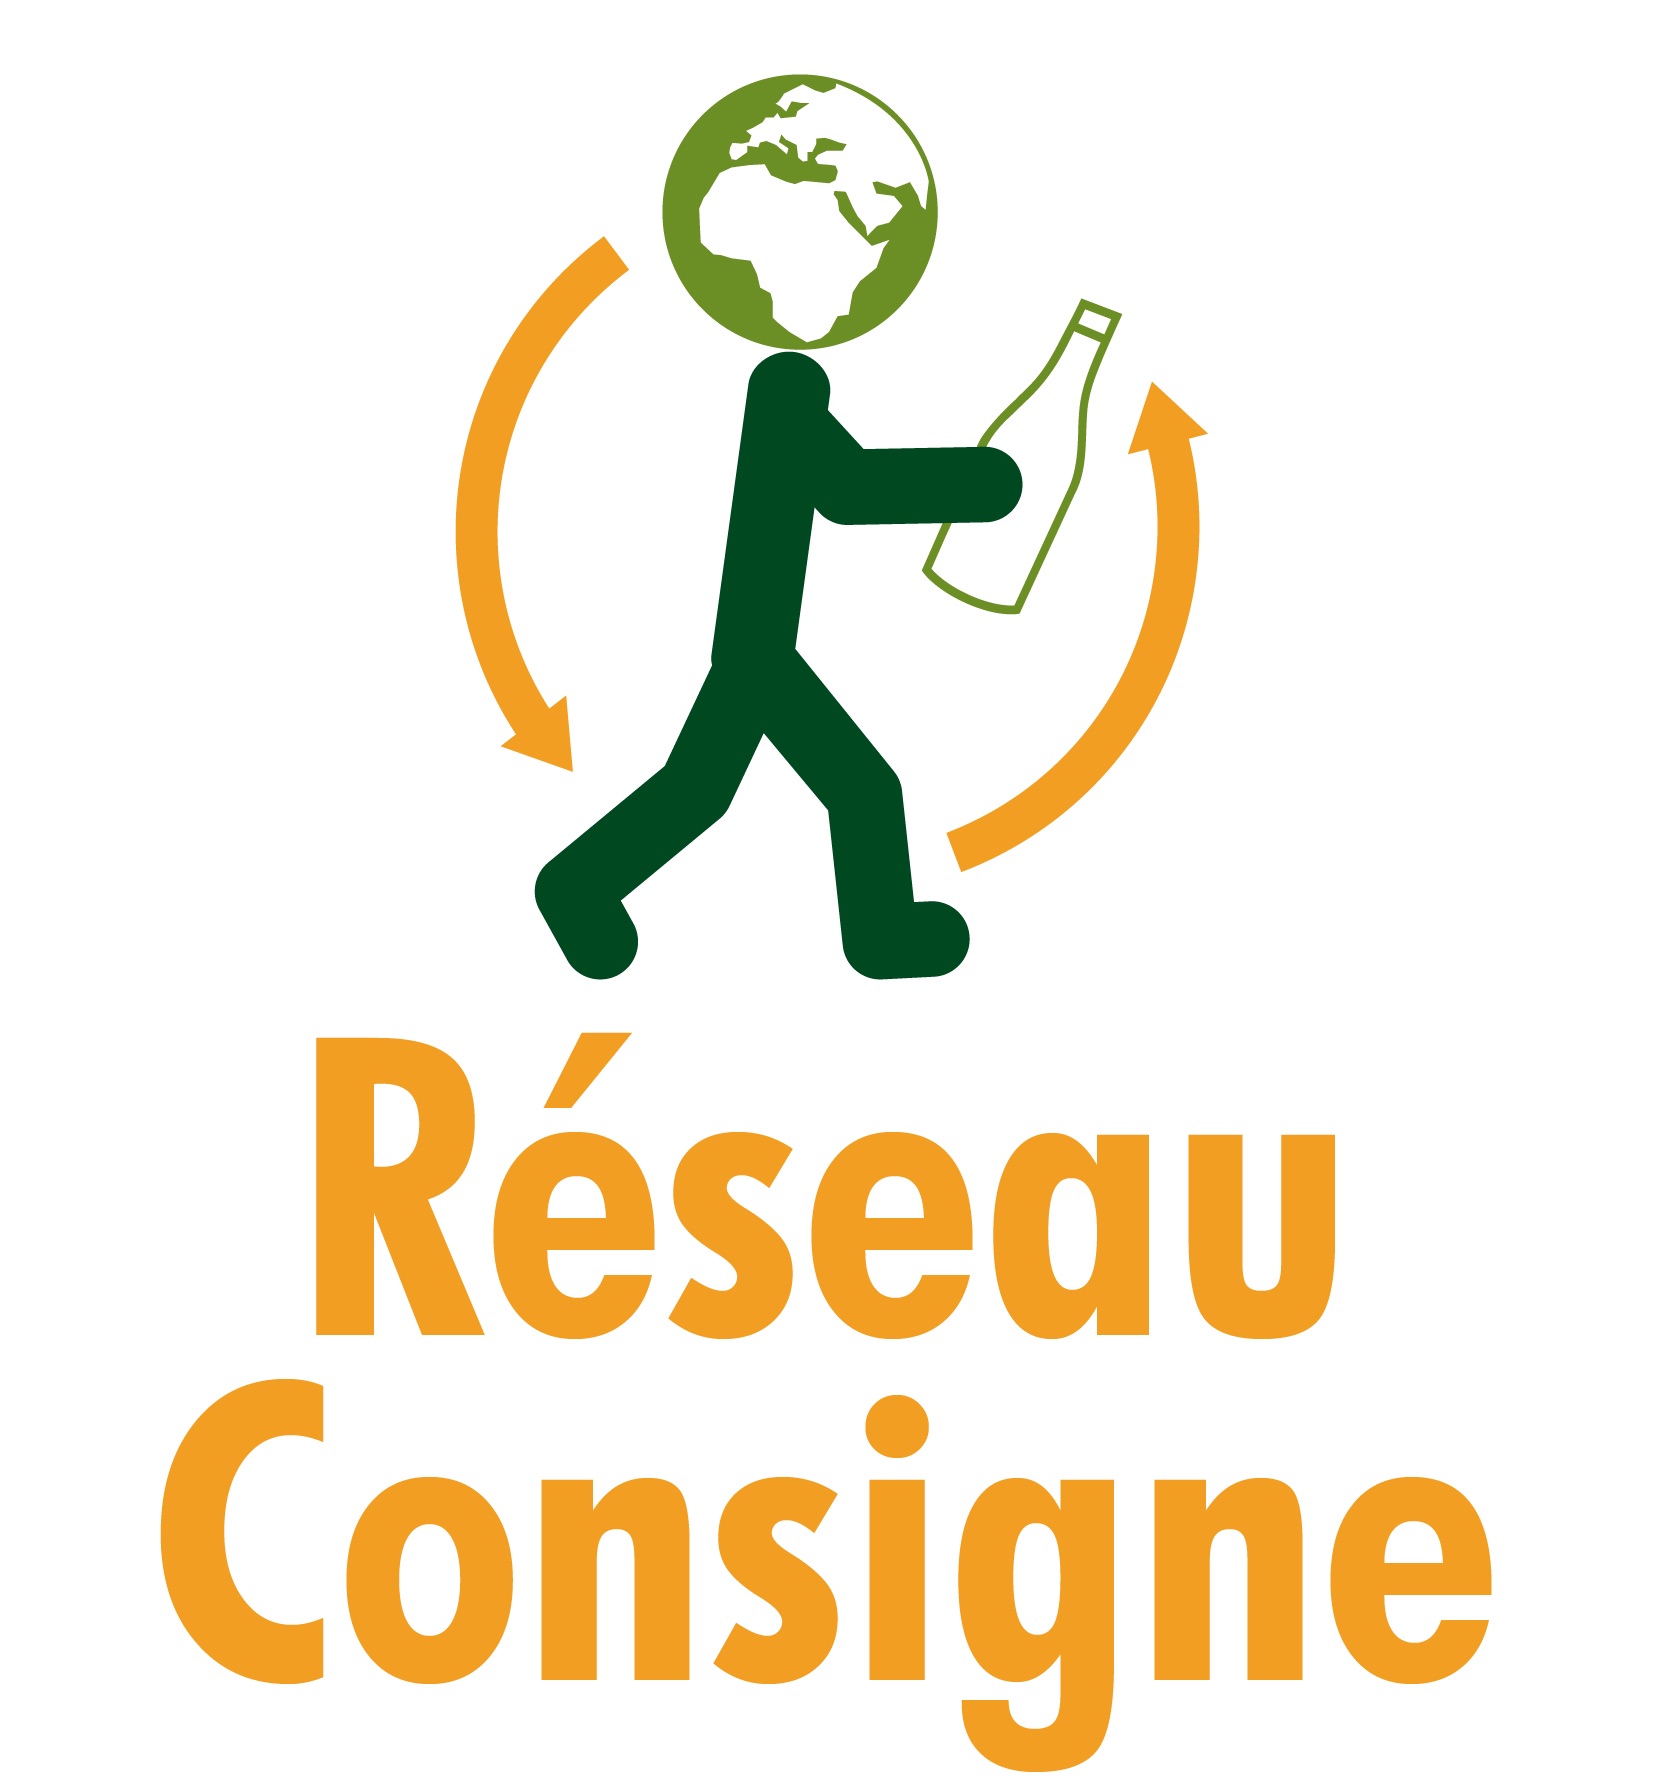 lid-reseauconsigne_logo